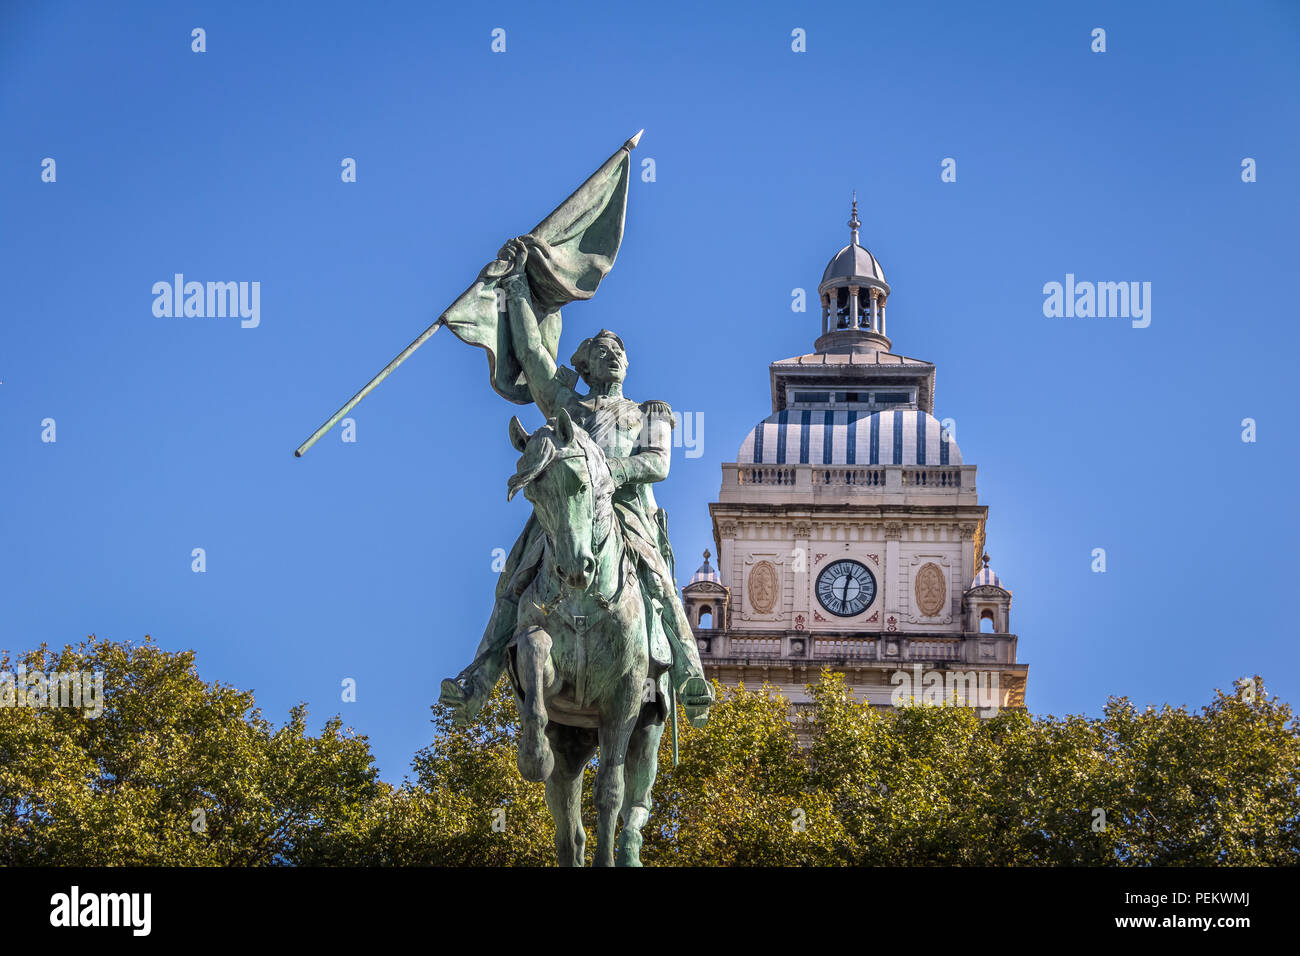 La statue de San Martin et la Tour de l'horloge du bâtiment de l'École de droit de l'Université de Rosario à la Plaza San Martín - Rosario, Santa Fe, Argentine Banque D'Images